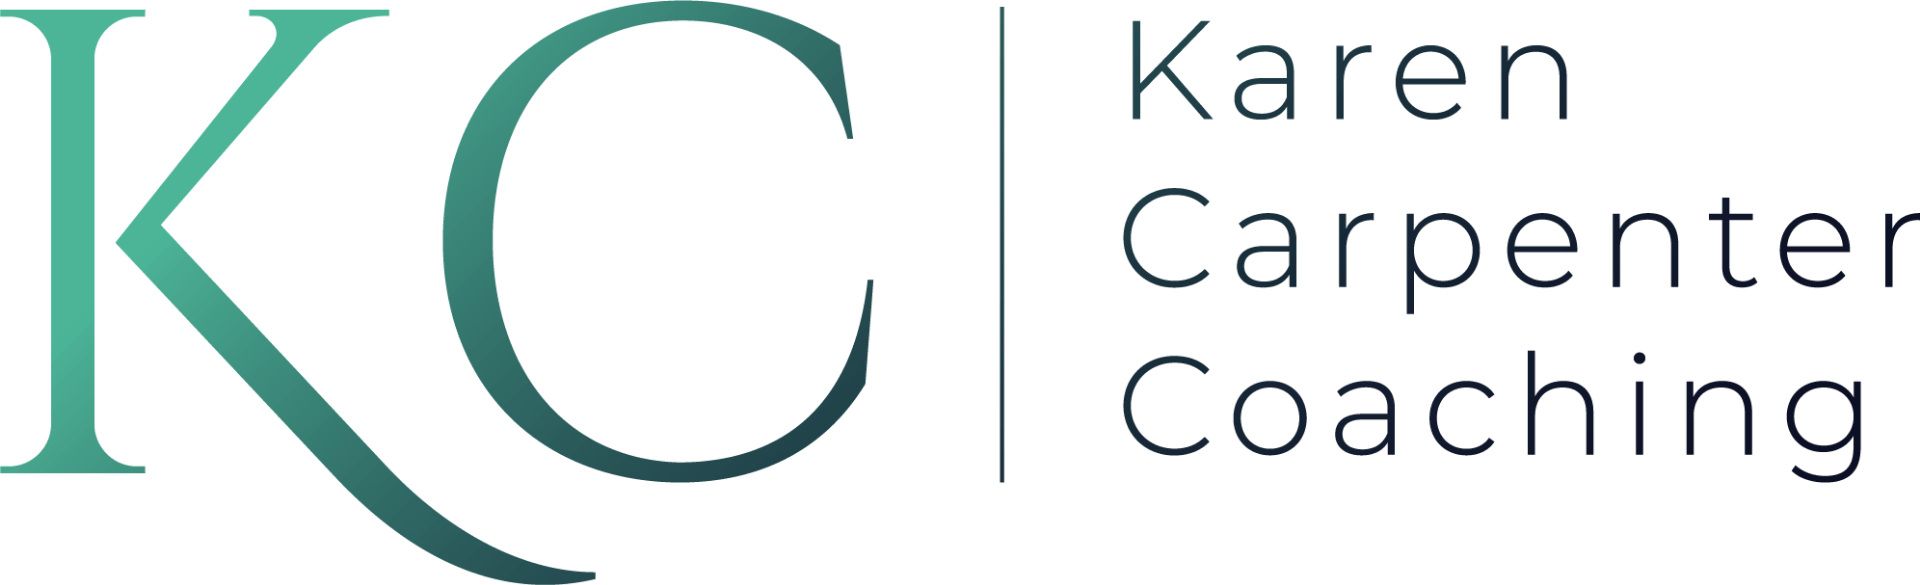 Karen Carpenter Coaching logo